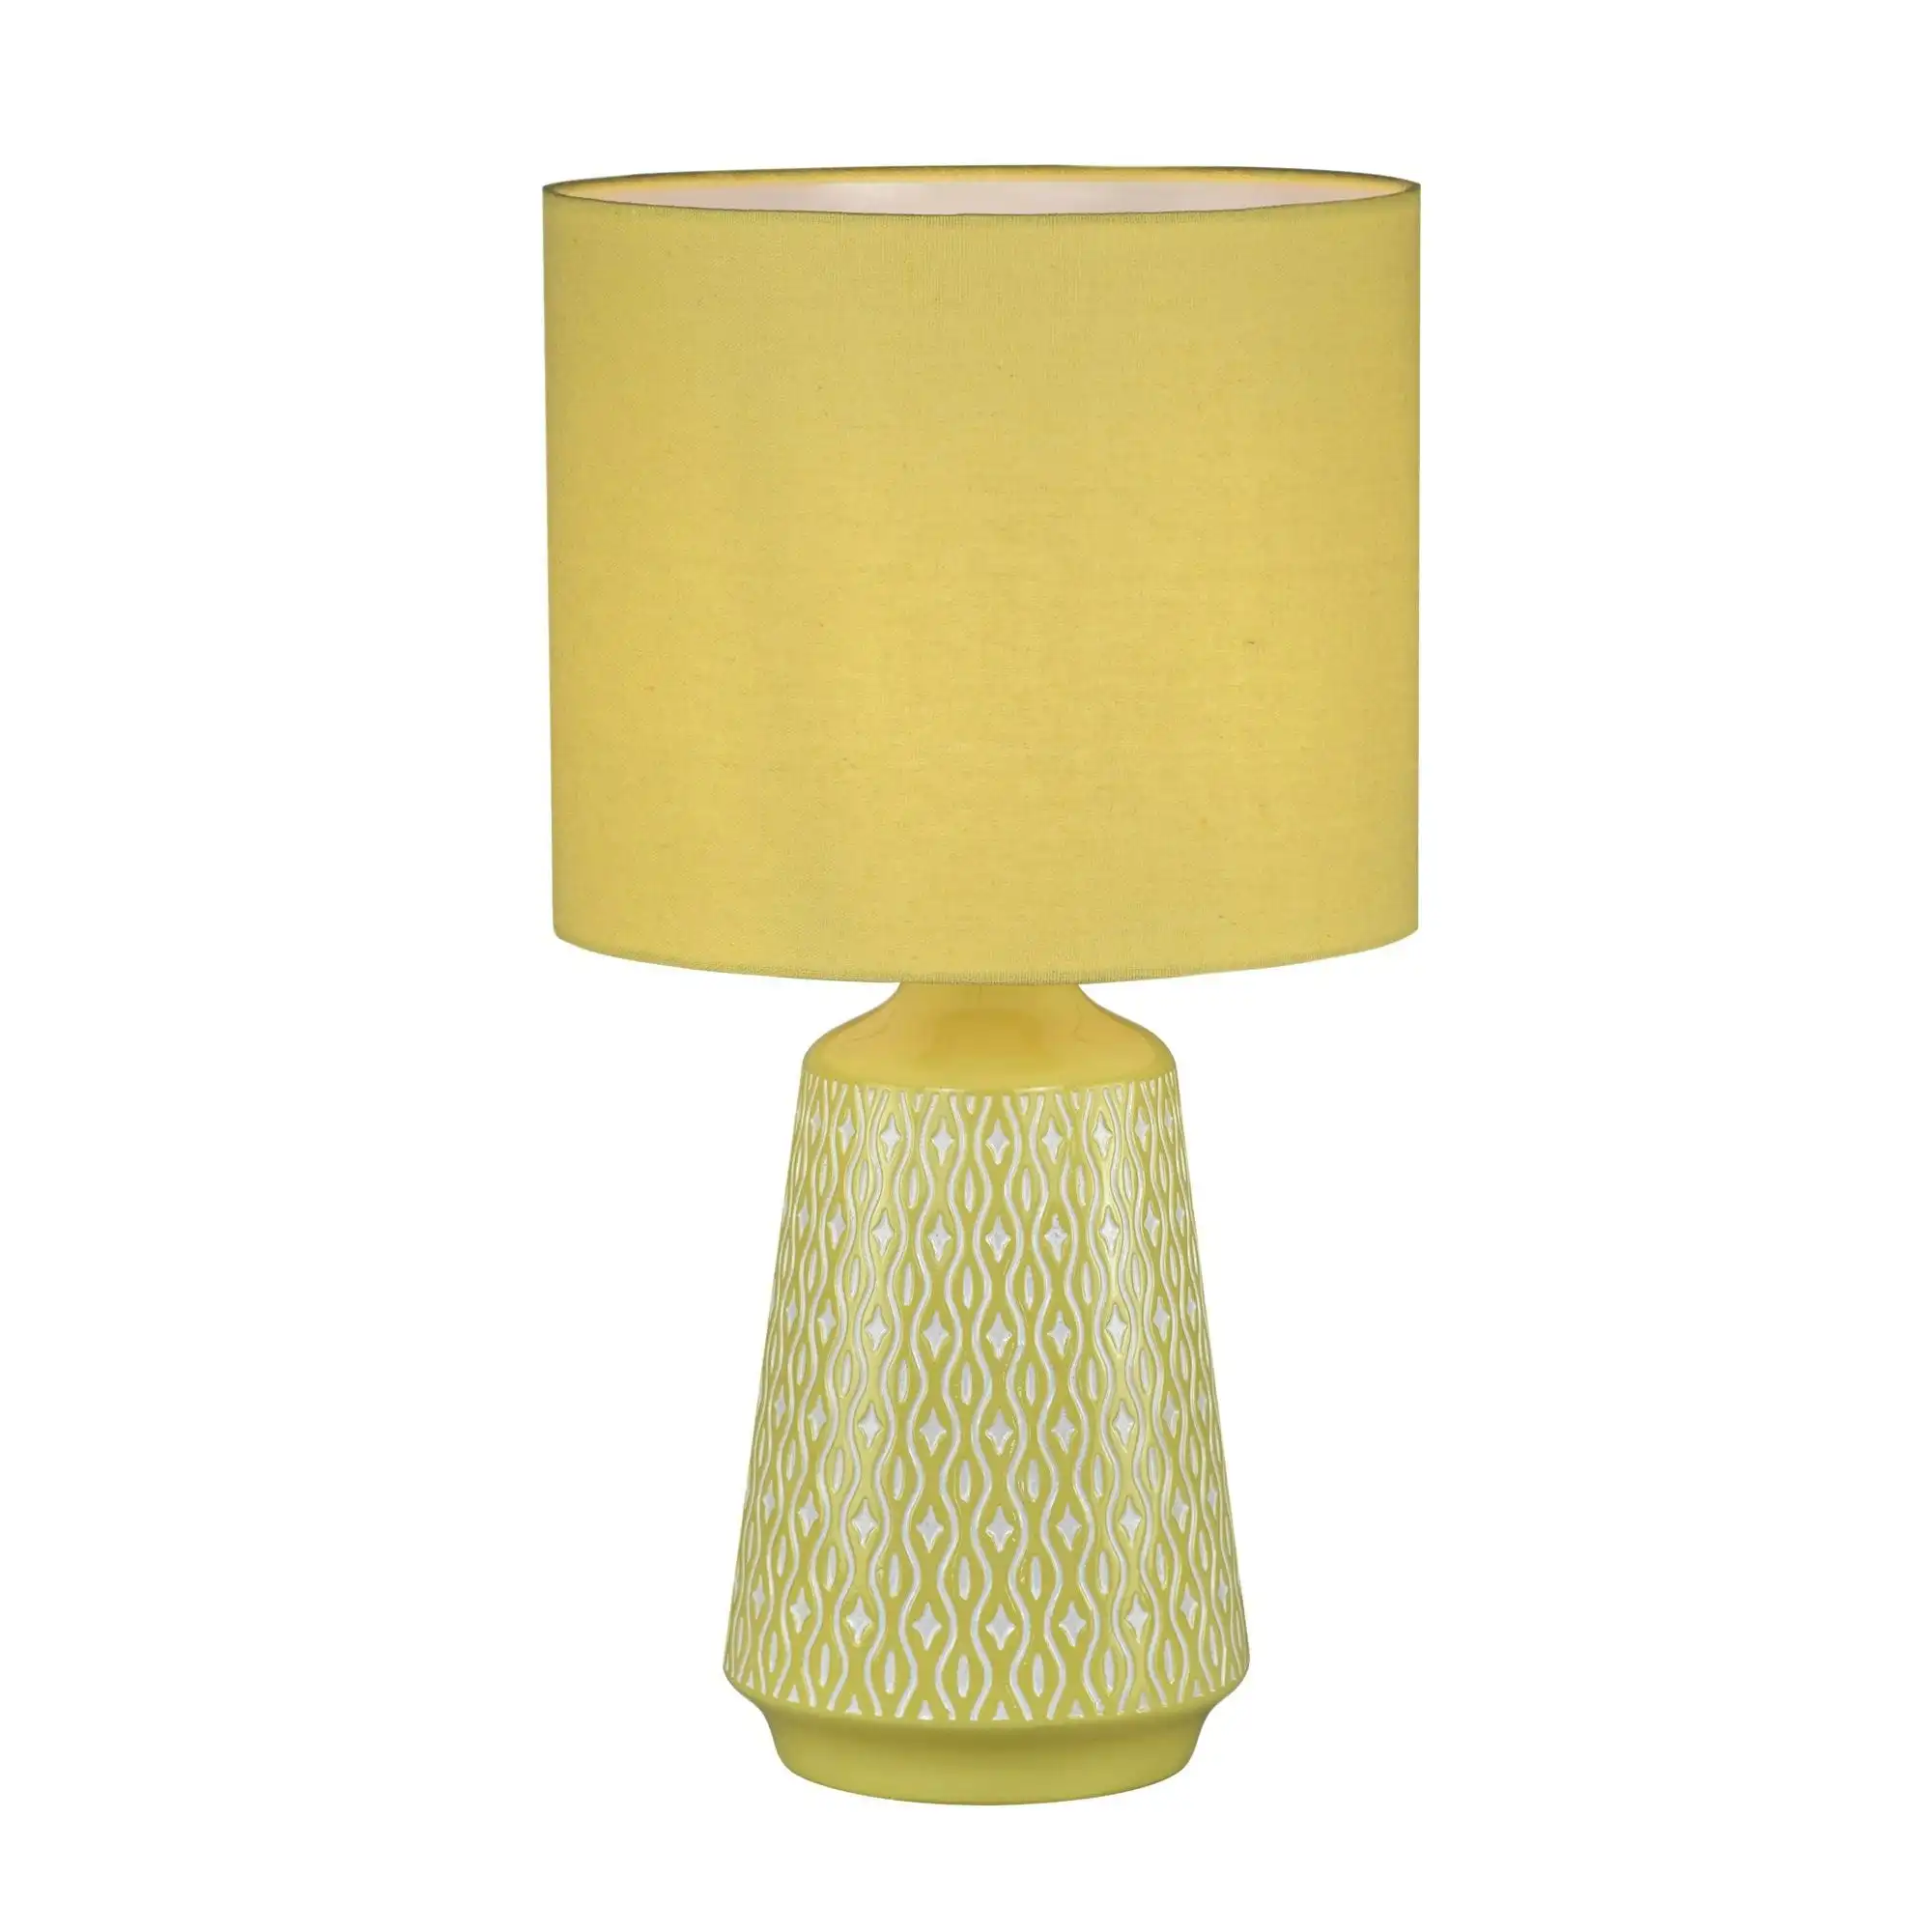 MOANA Ceramic Table Lamp with Shade Yellow